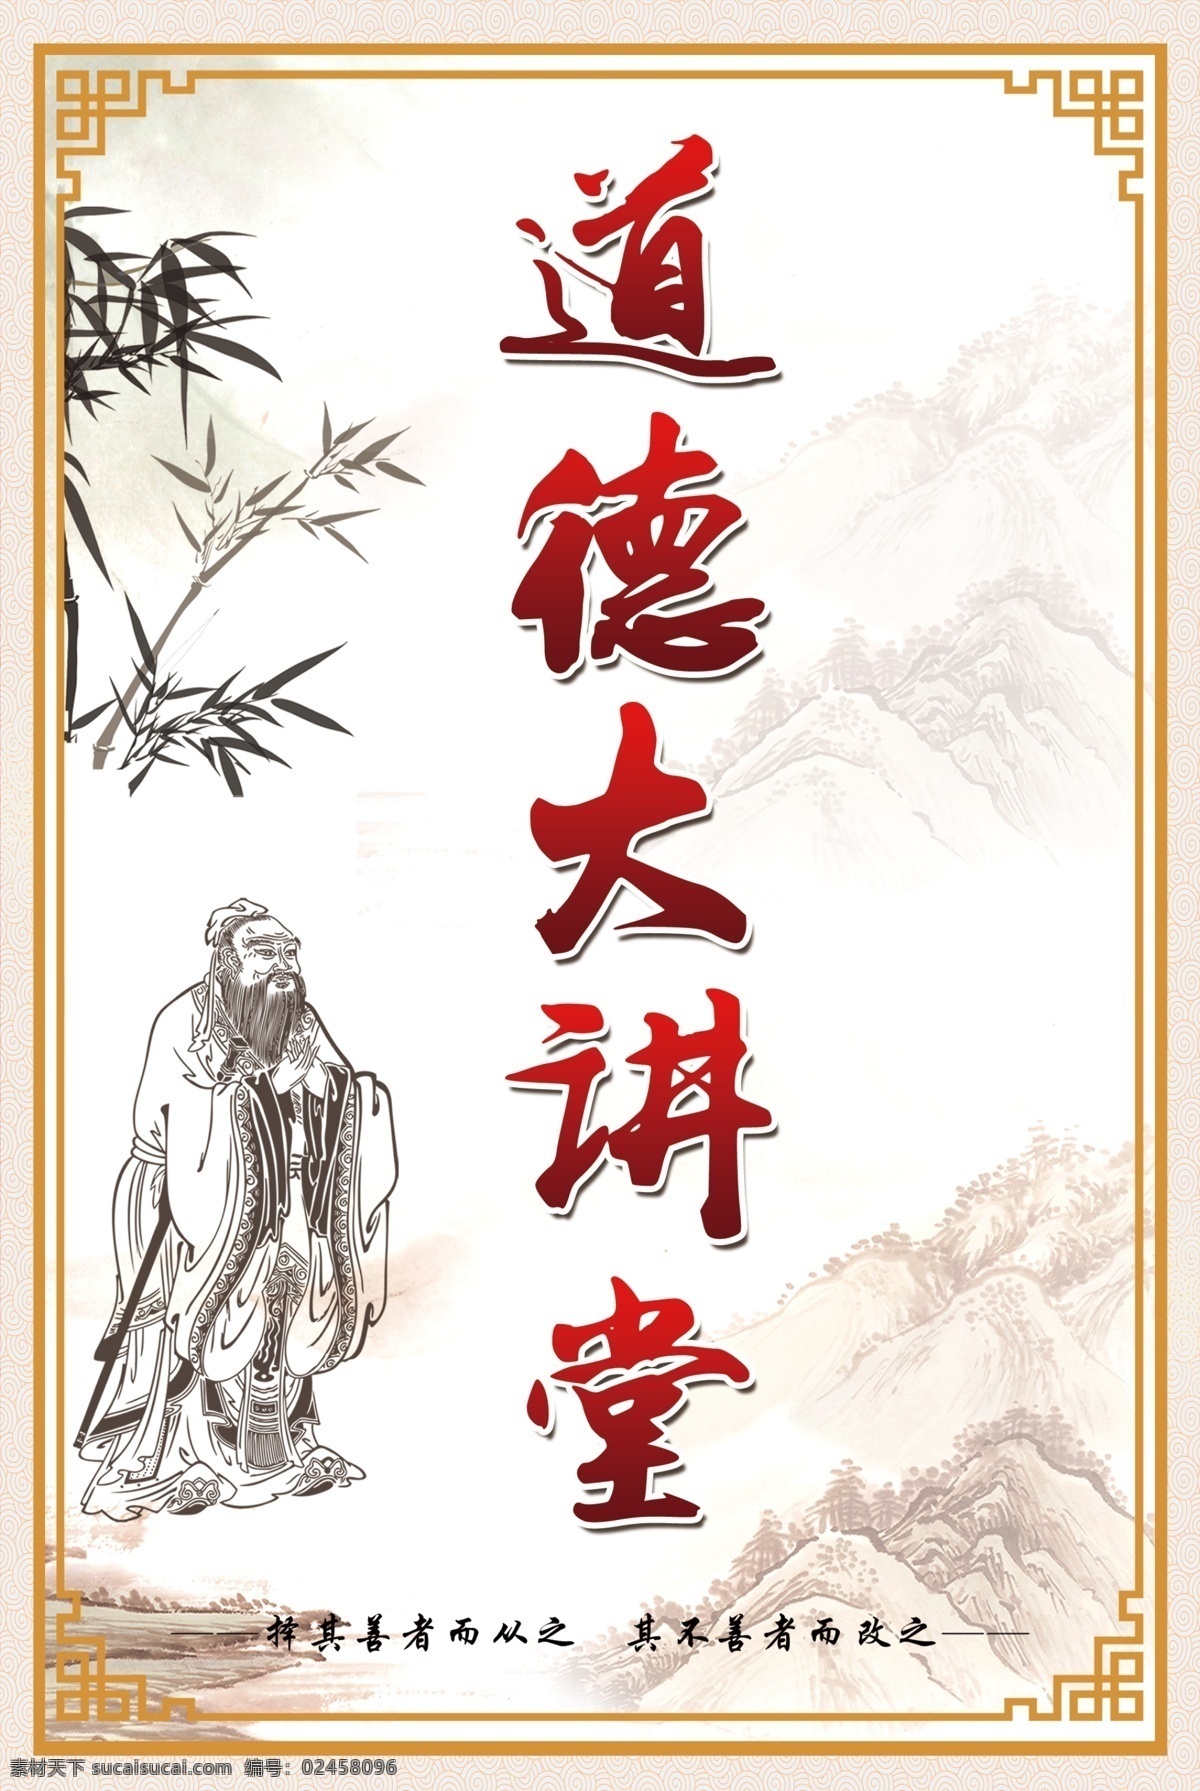 道德 讲堂 古典 传统展板 展板 传统 文化 孔子 中国